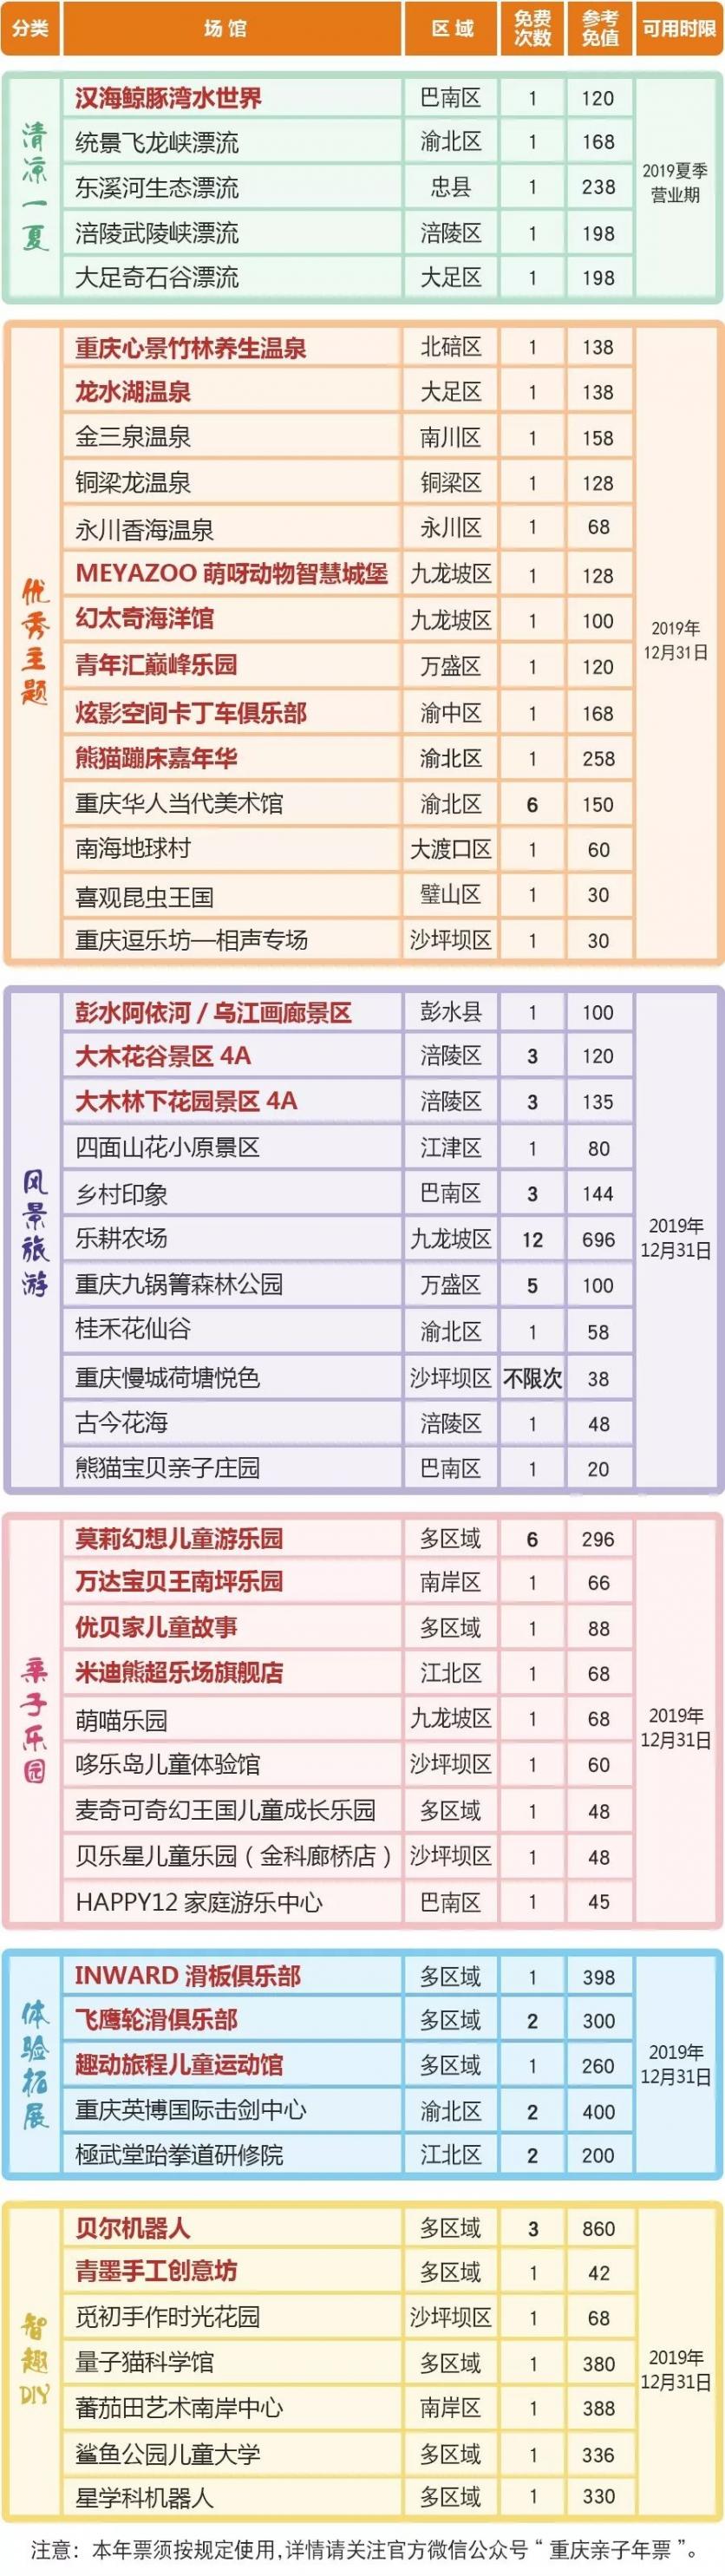 重庆亲子游览年票2019夏季版景点名单+票价